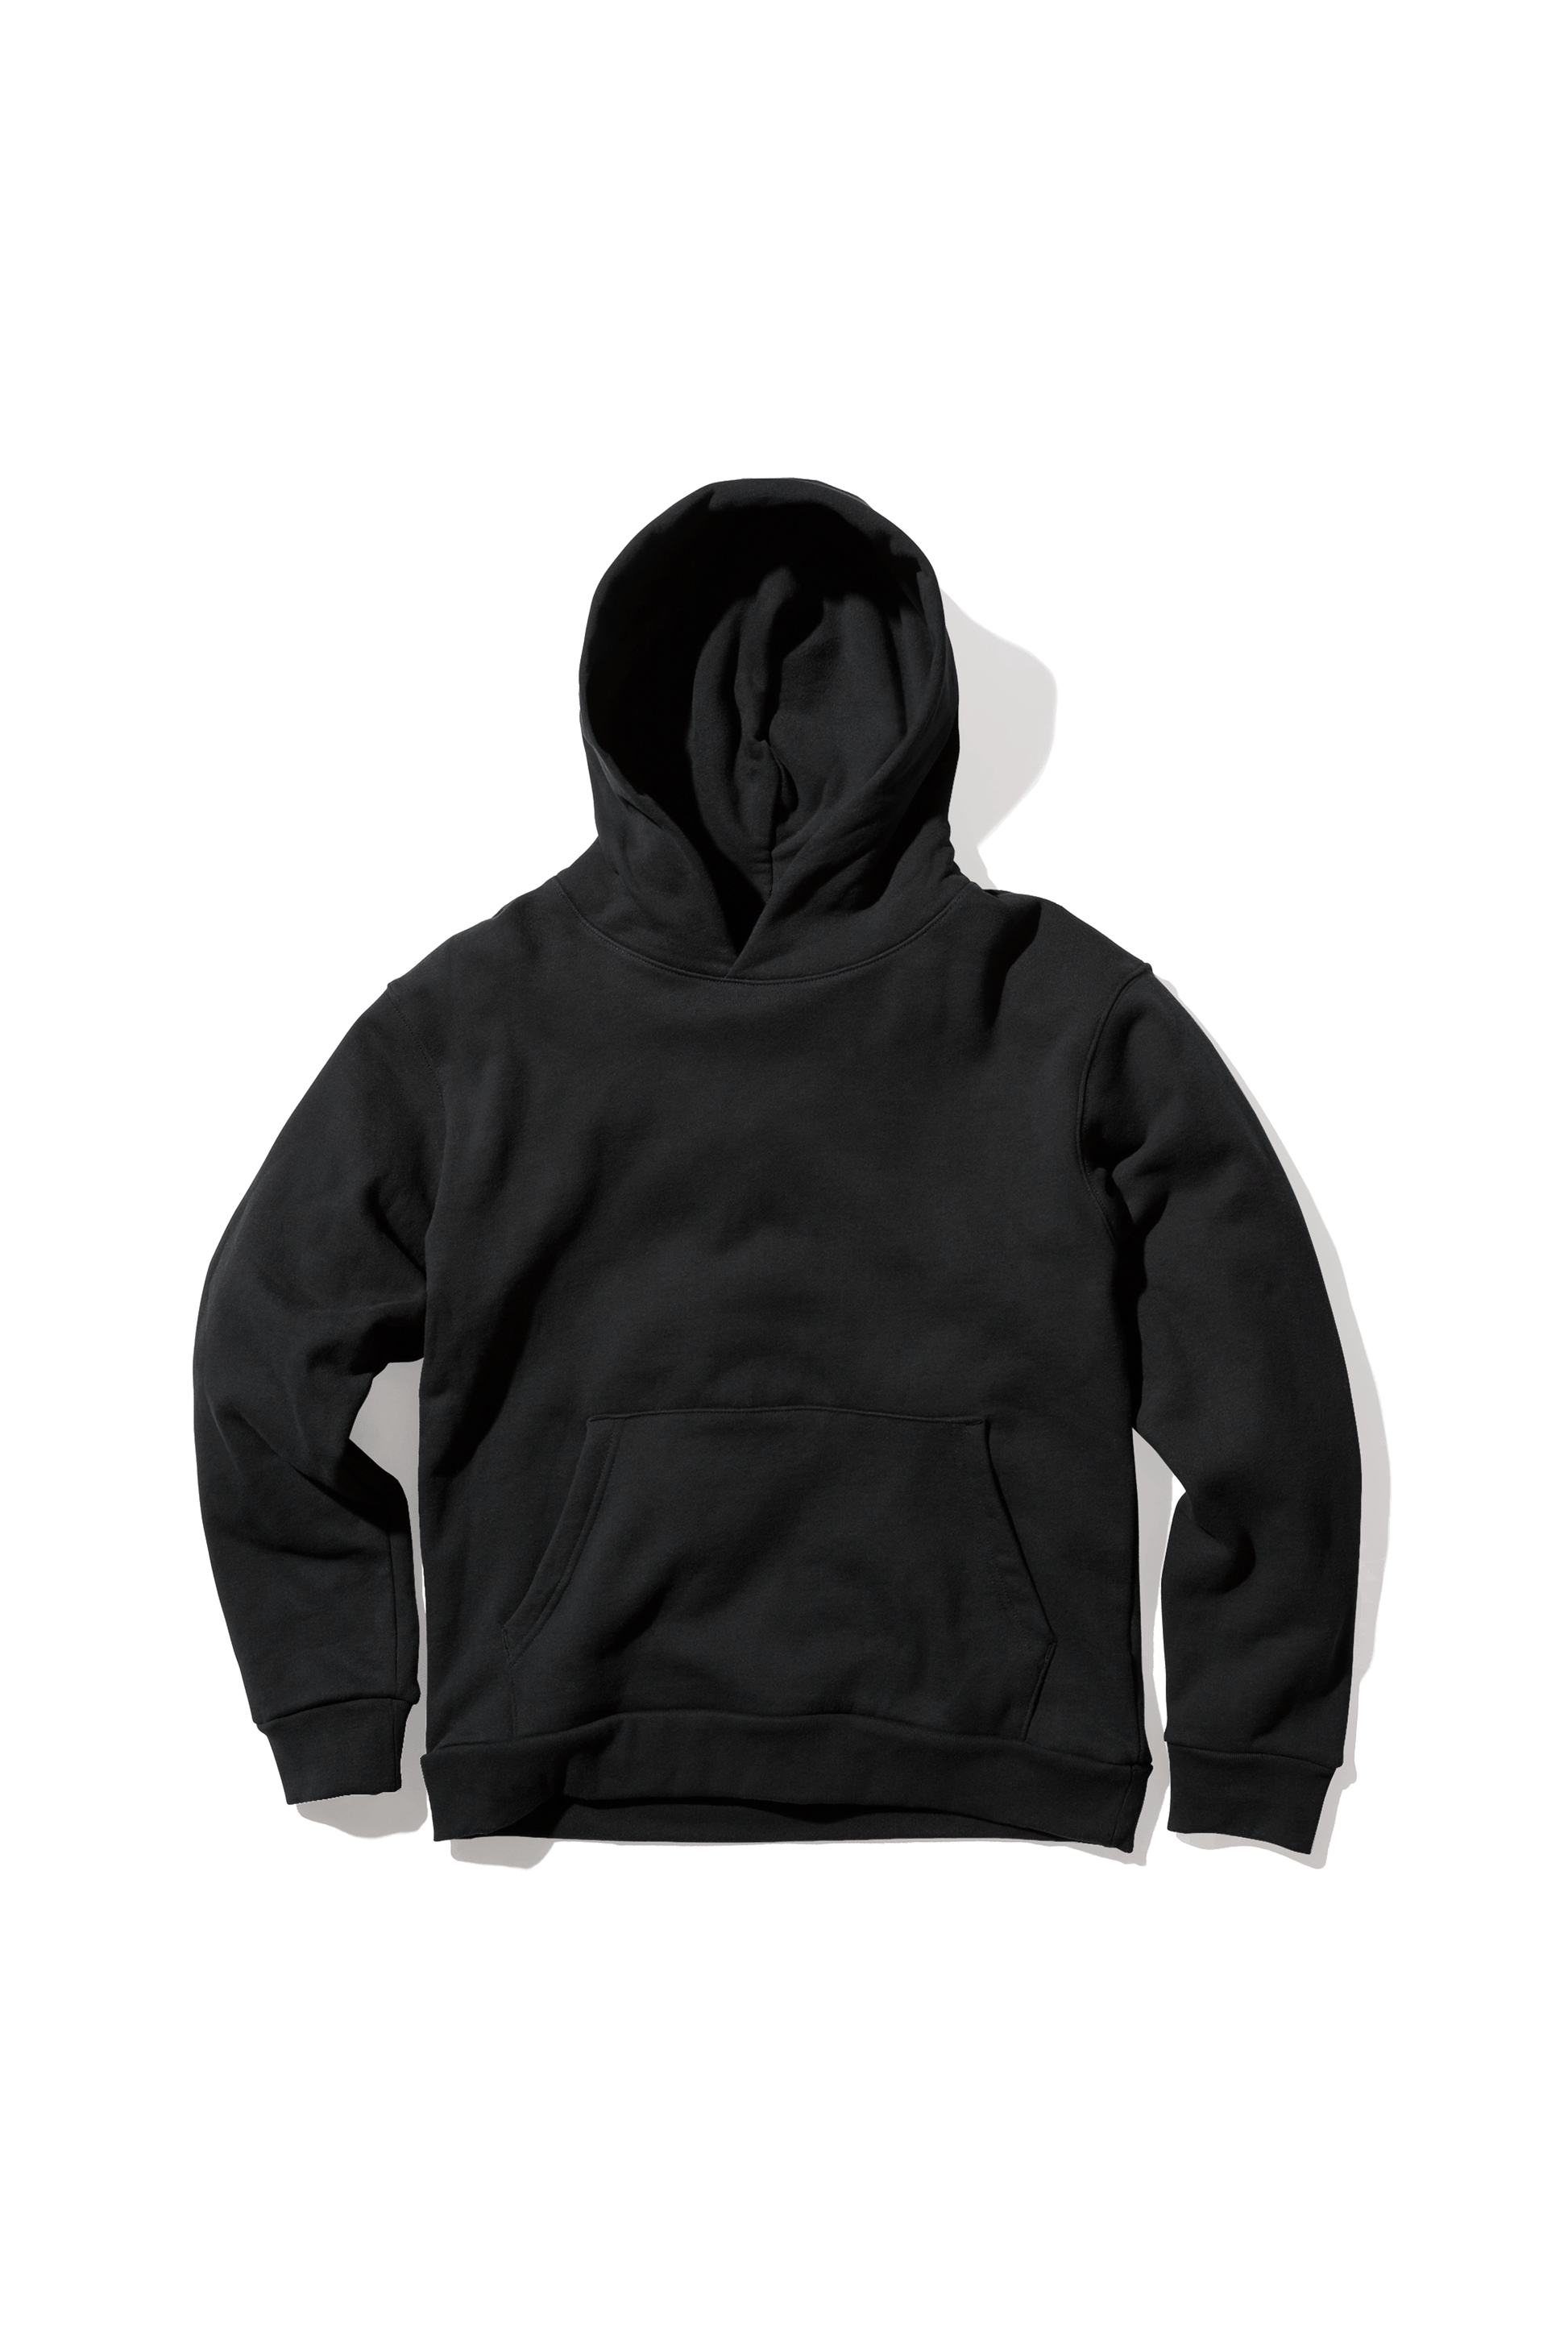 hoodie black and